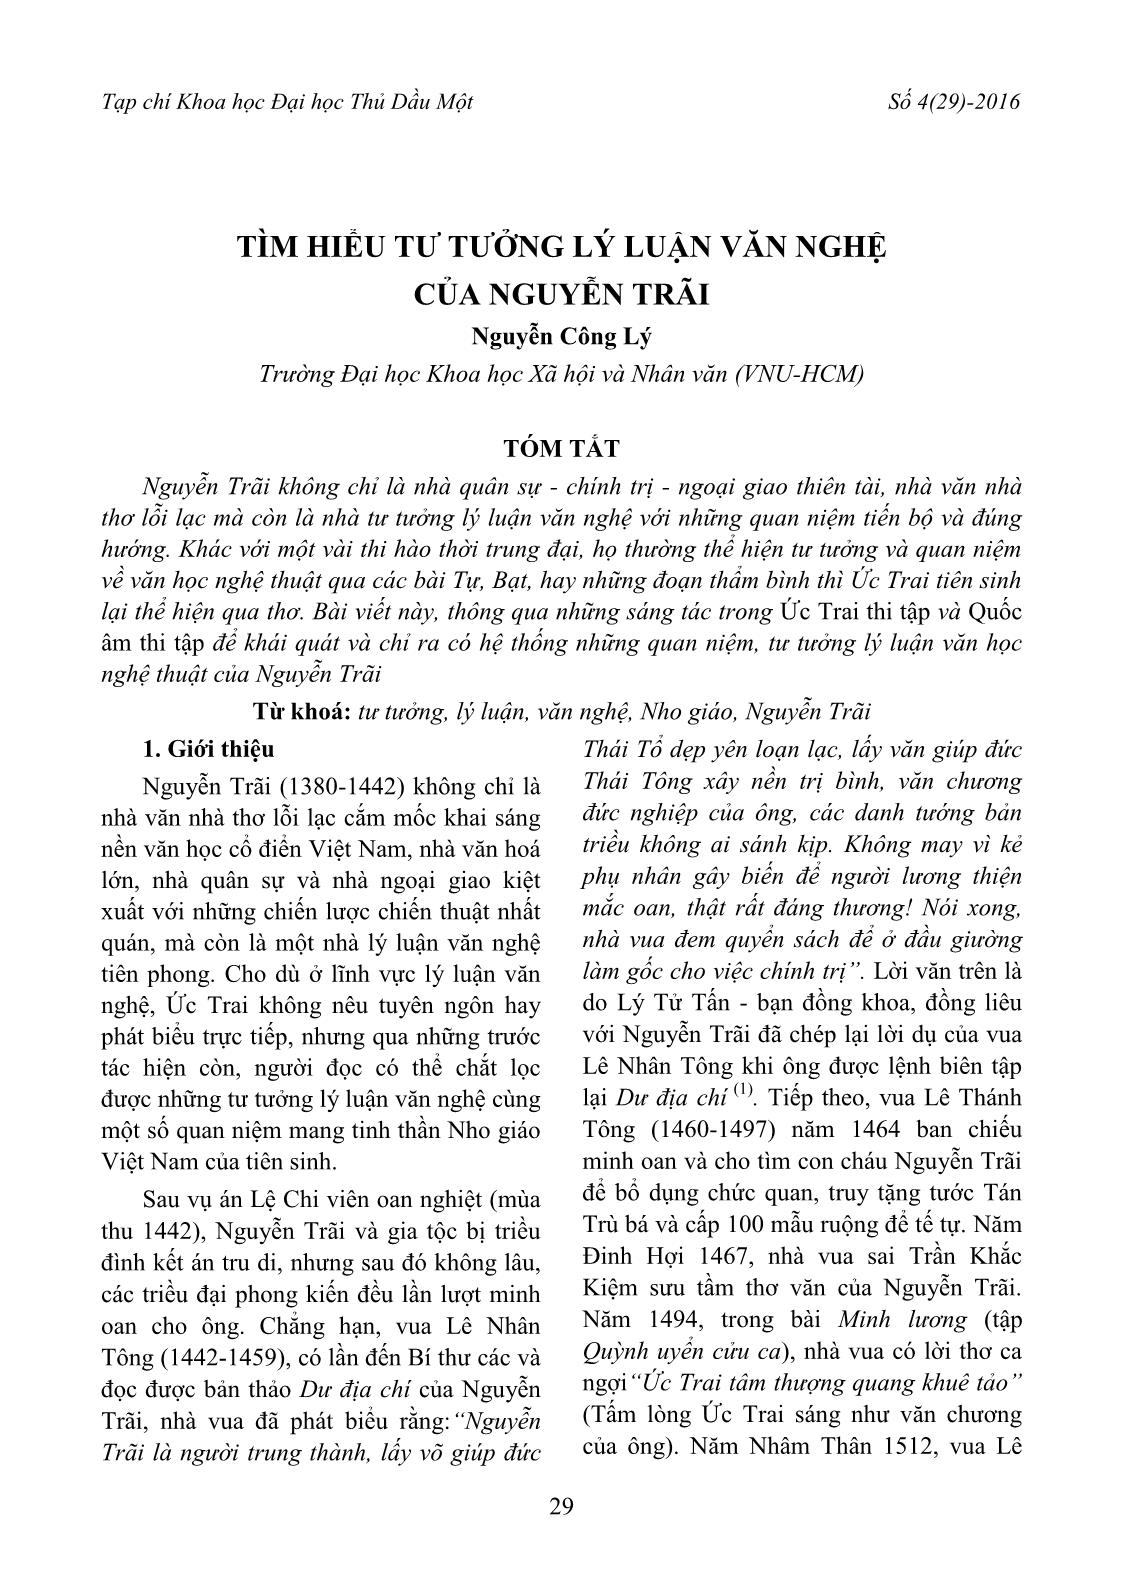 Tìm hiểu tư tưởng lý luận văn nghệ của Nguyễn Trãi trang 1